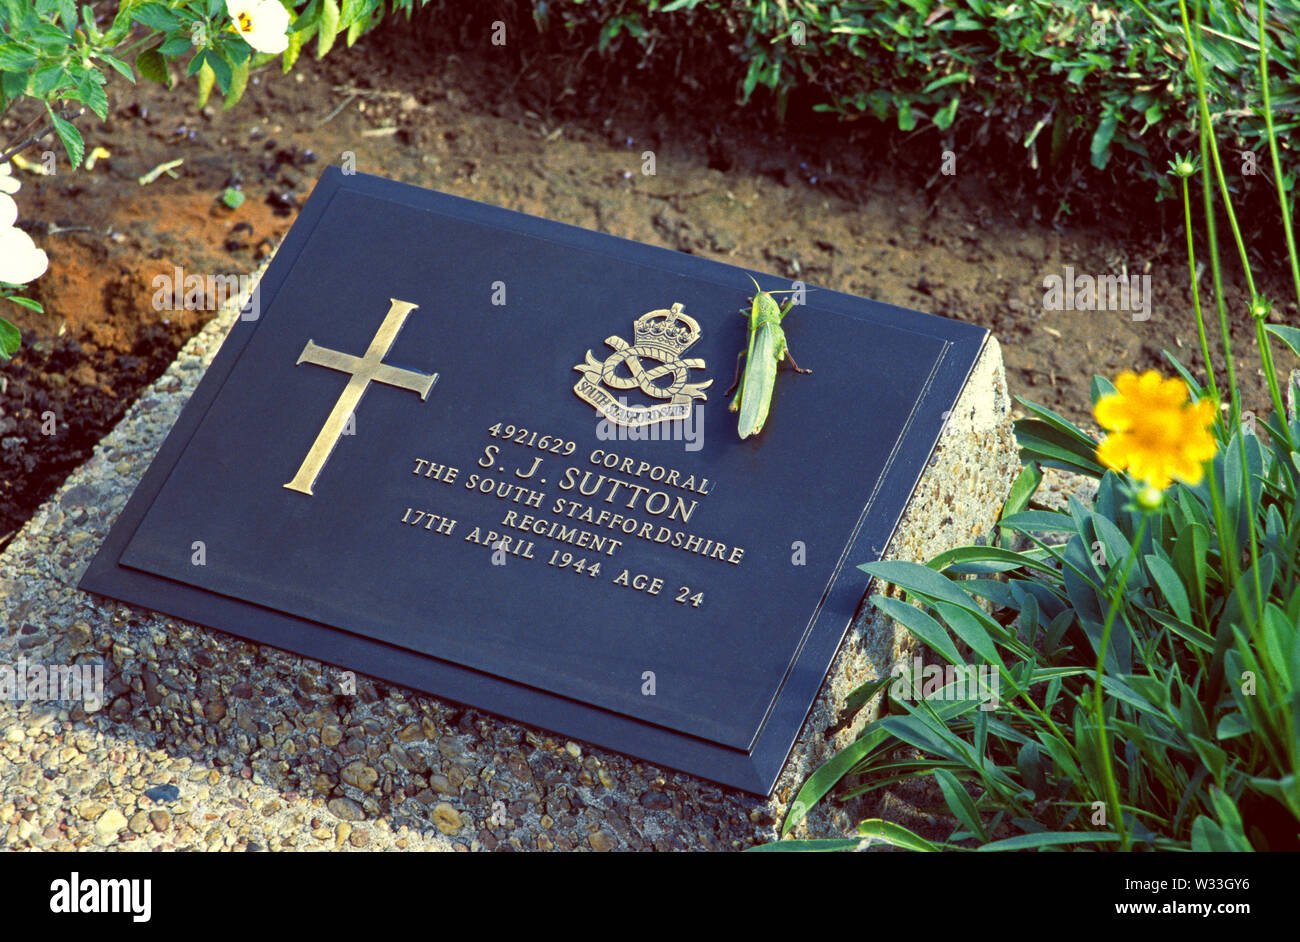 taukkyan, myanmar - december 23, 2001: the tombstone of a british soldier at taukkyan war memorial Stock Photo